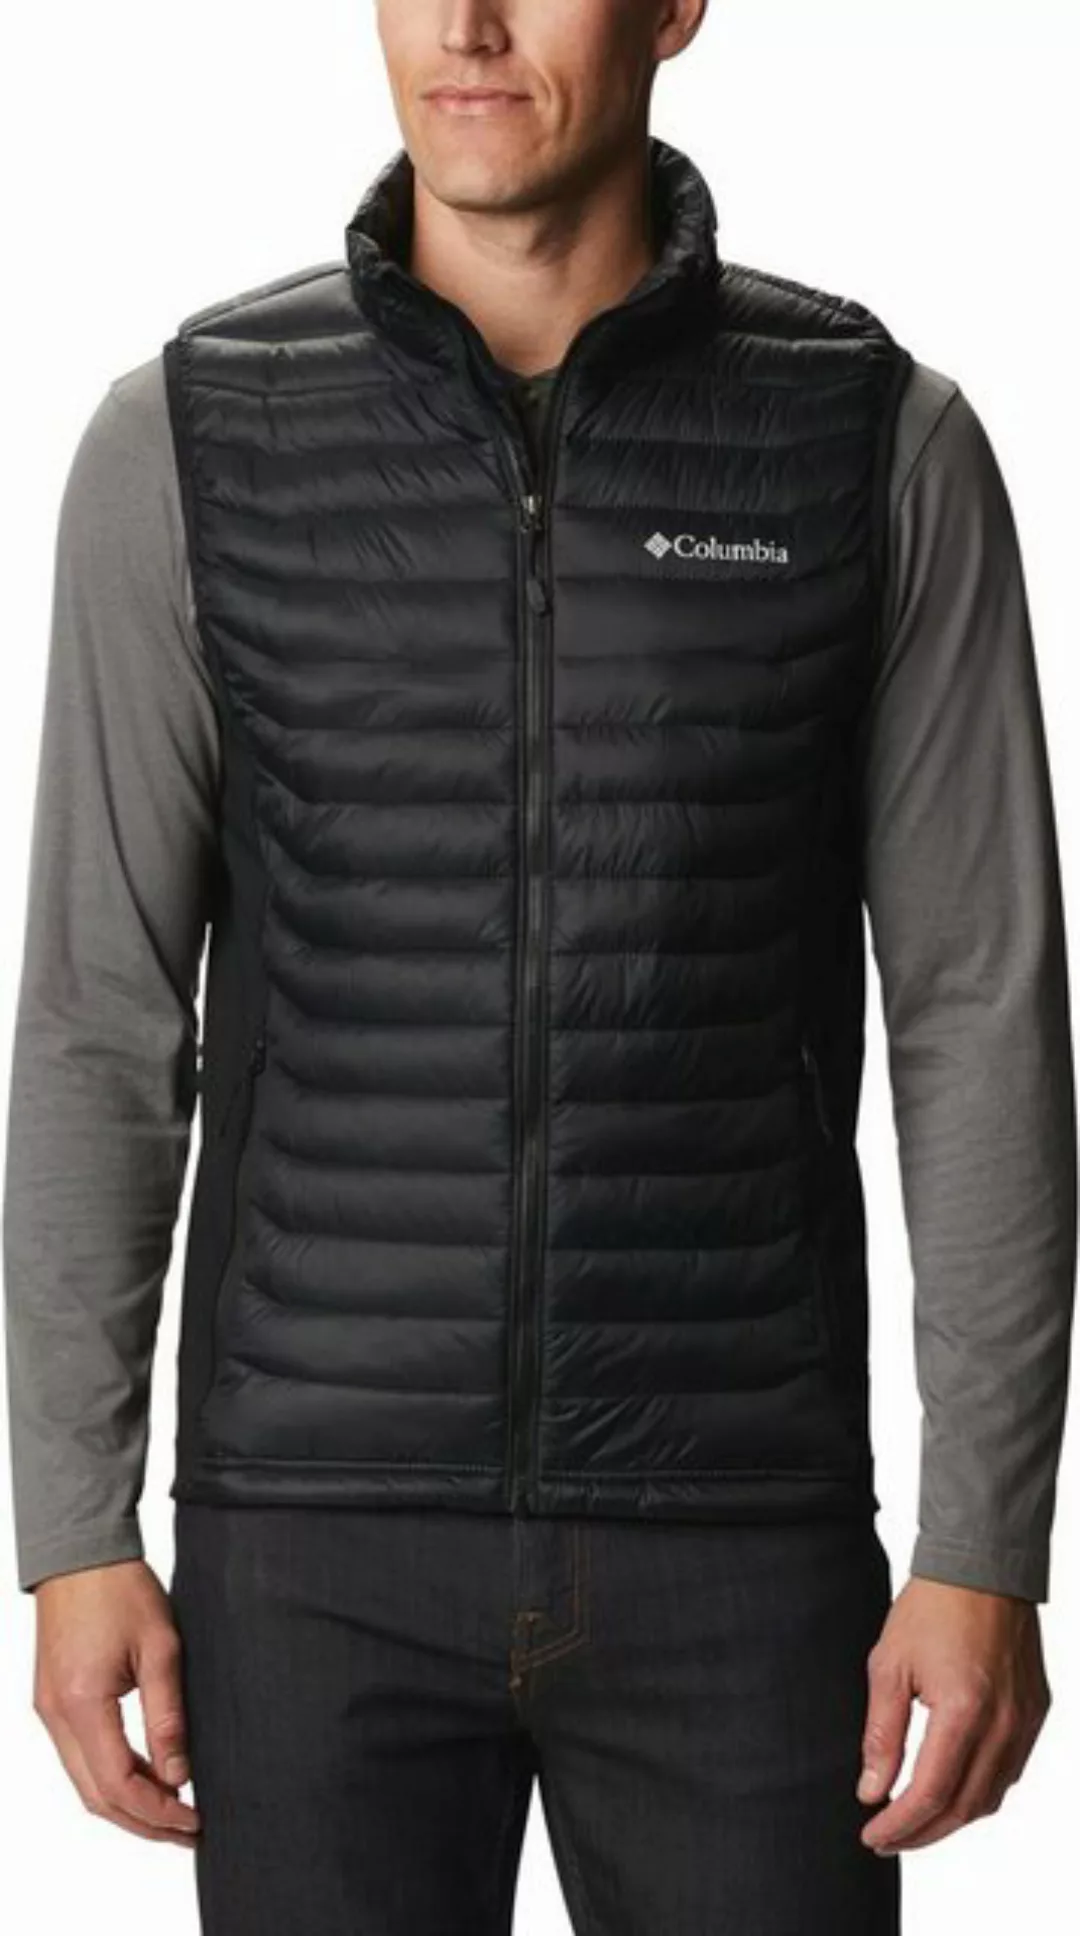 Columbia Trekkingjacke Powder Pass Vest BLACK günstig online kaufen